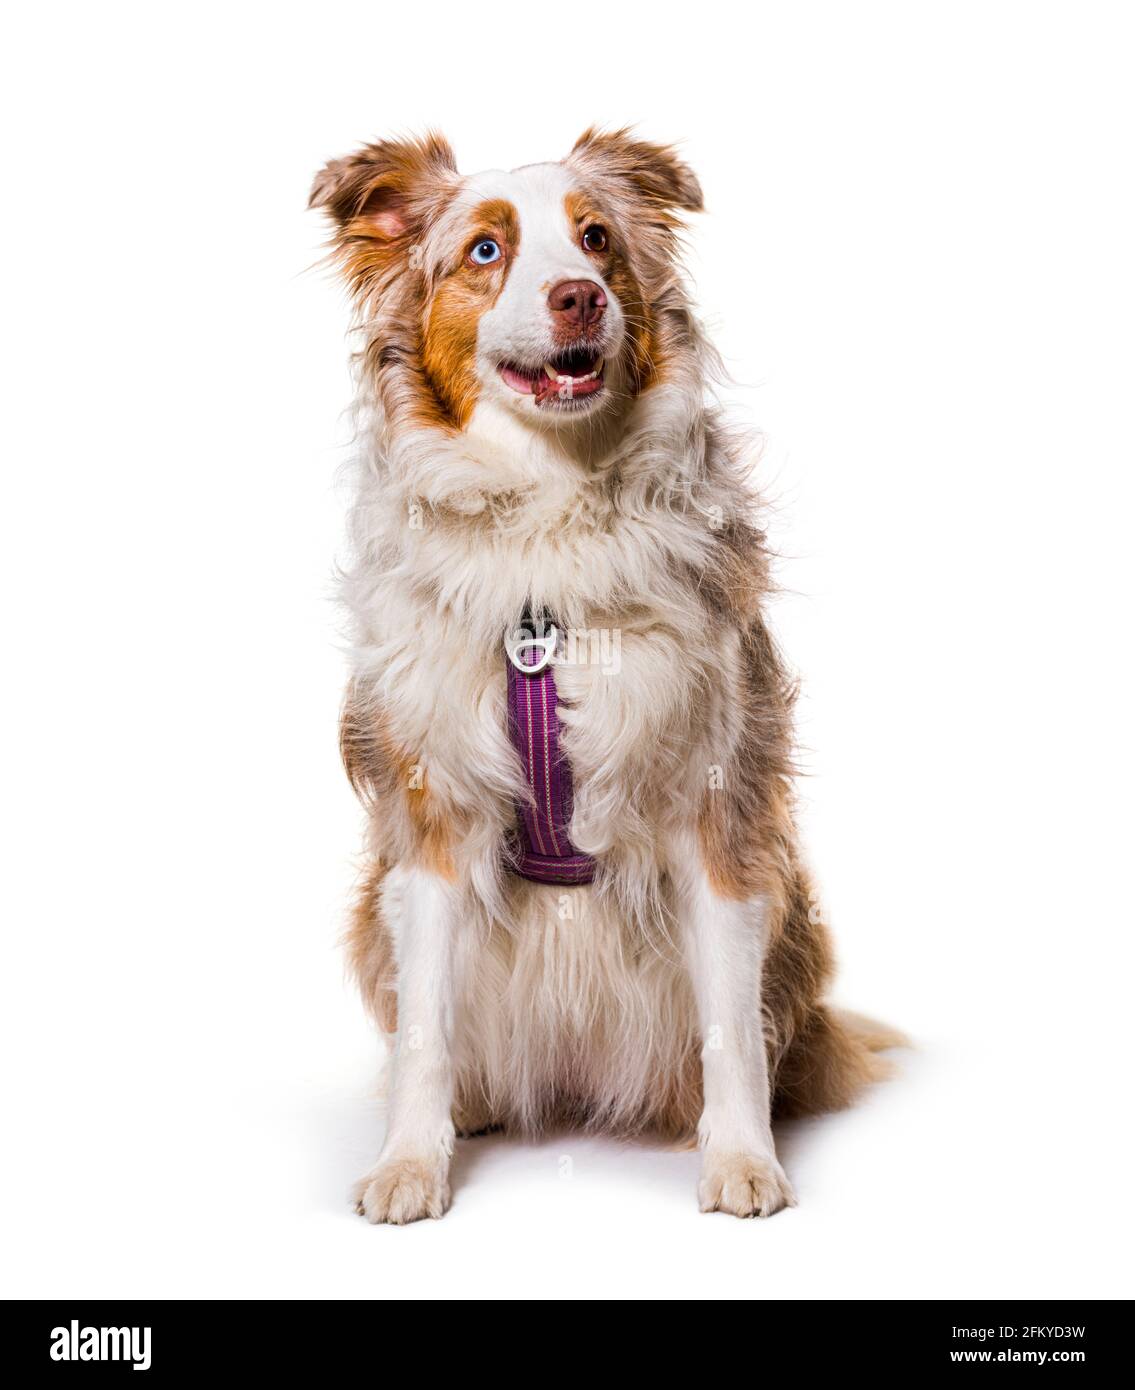 Hund trägt geschirr Ausgeschnittene Stockfotos und -bilder - Alamy